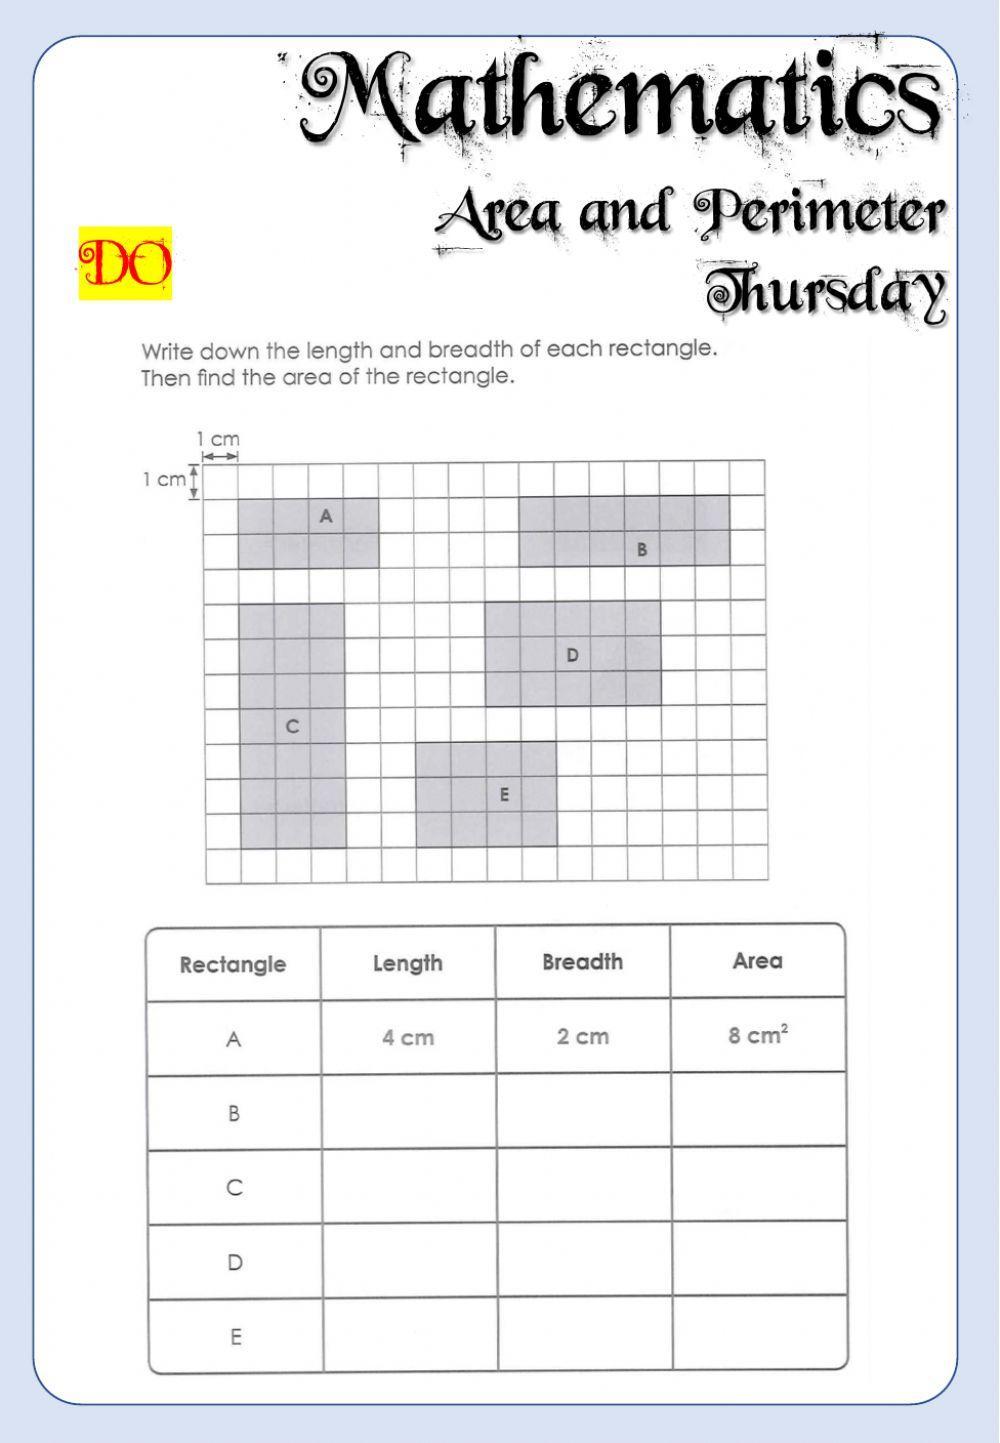 Week 20 - Thursday - Maths 6